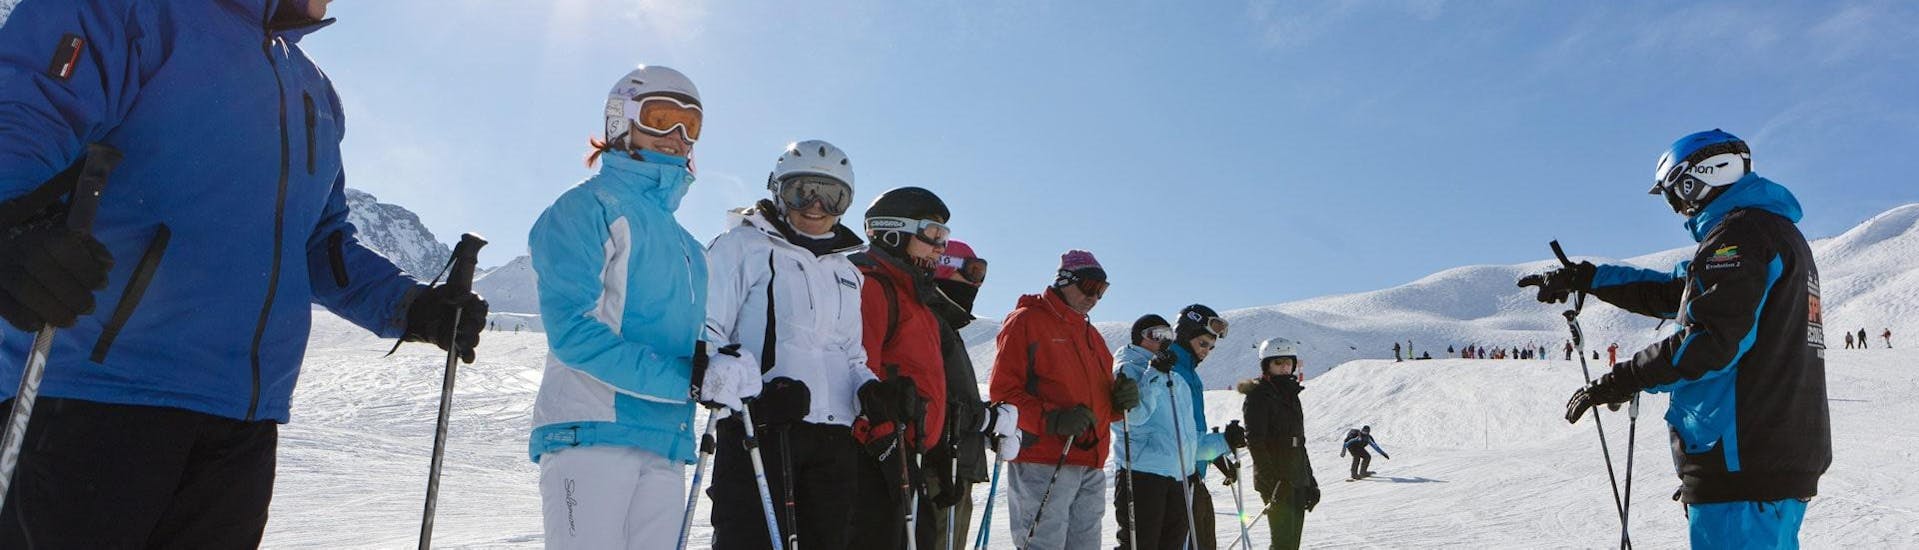 Clases de esquí para adultos a partir de 13 años para todos los niveles con Evolution 2 Spirit - Arc 1950 & Villaroger.